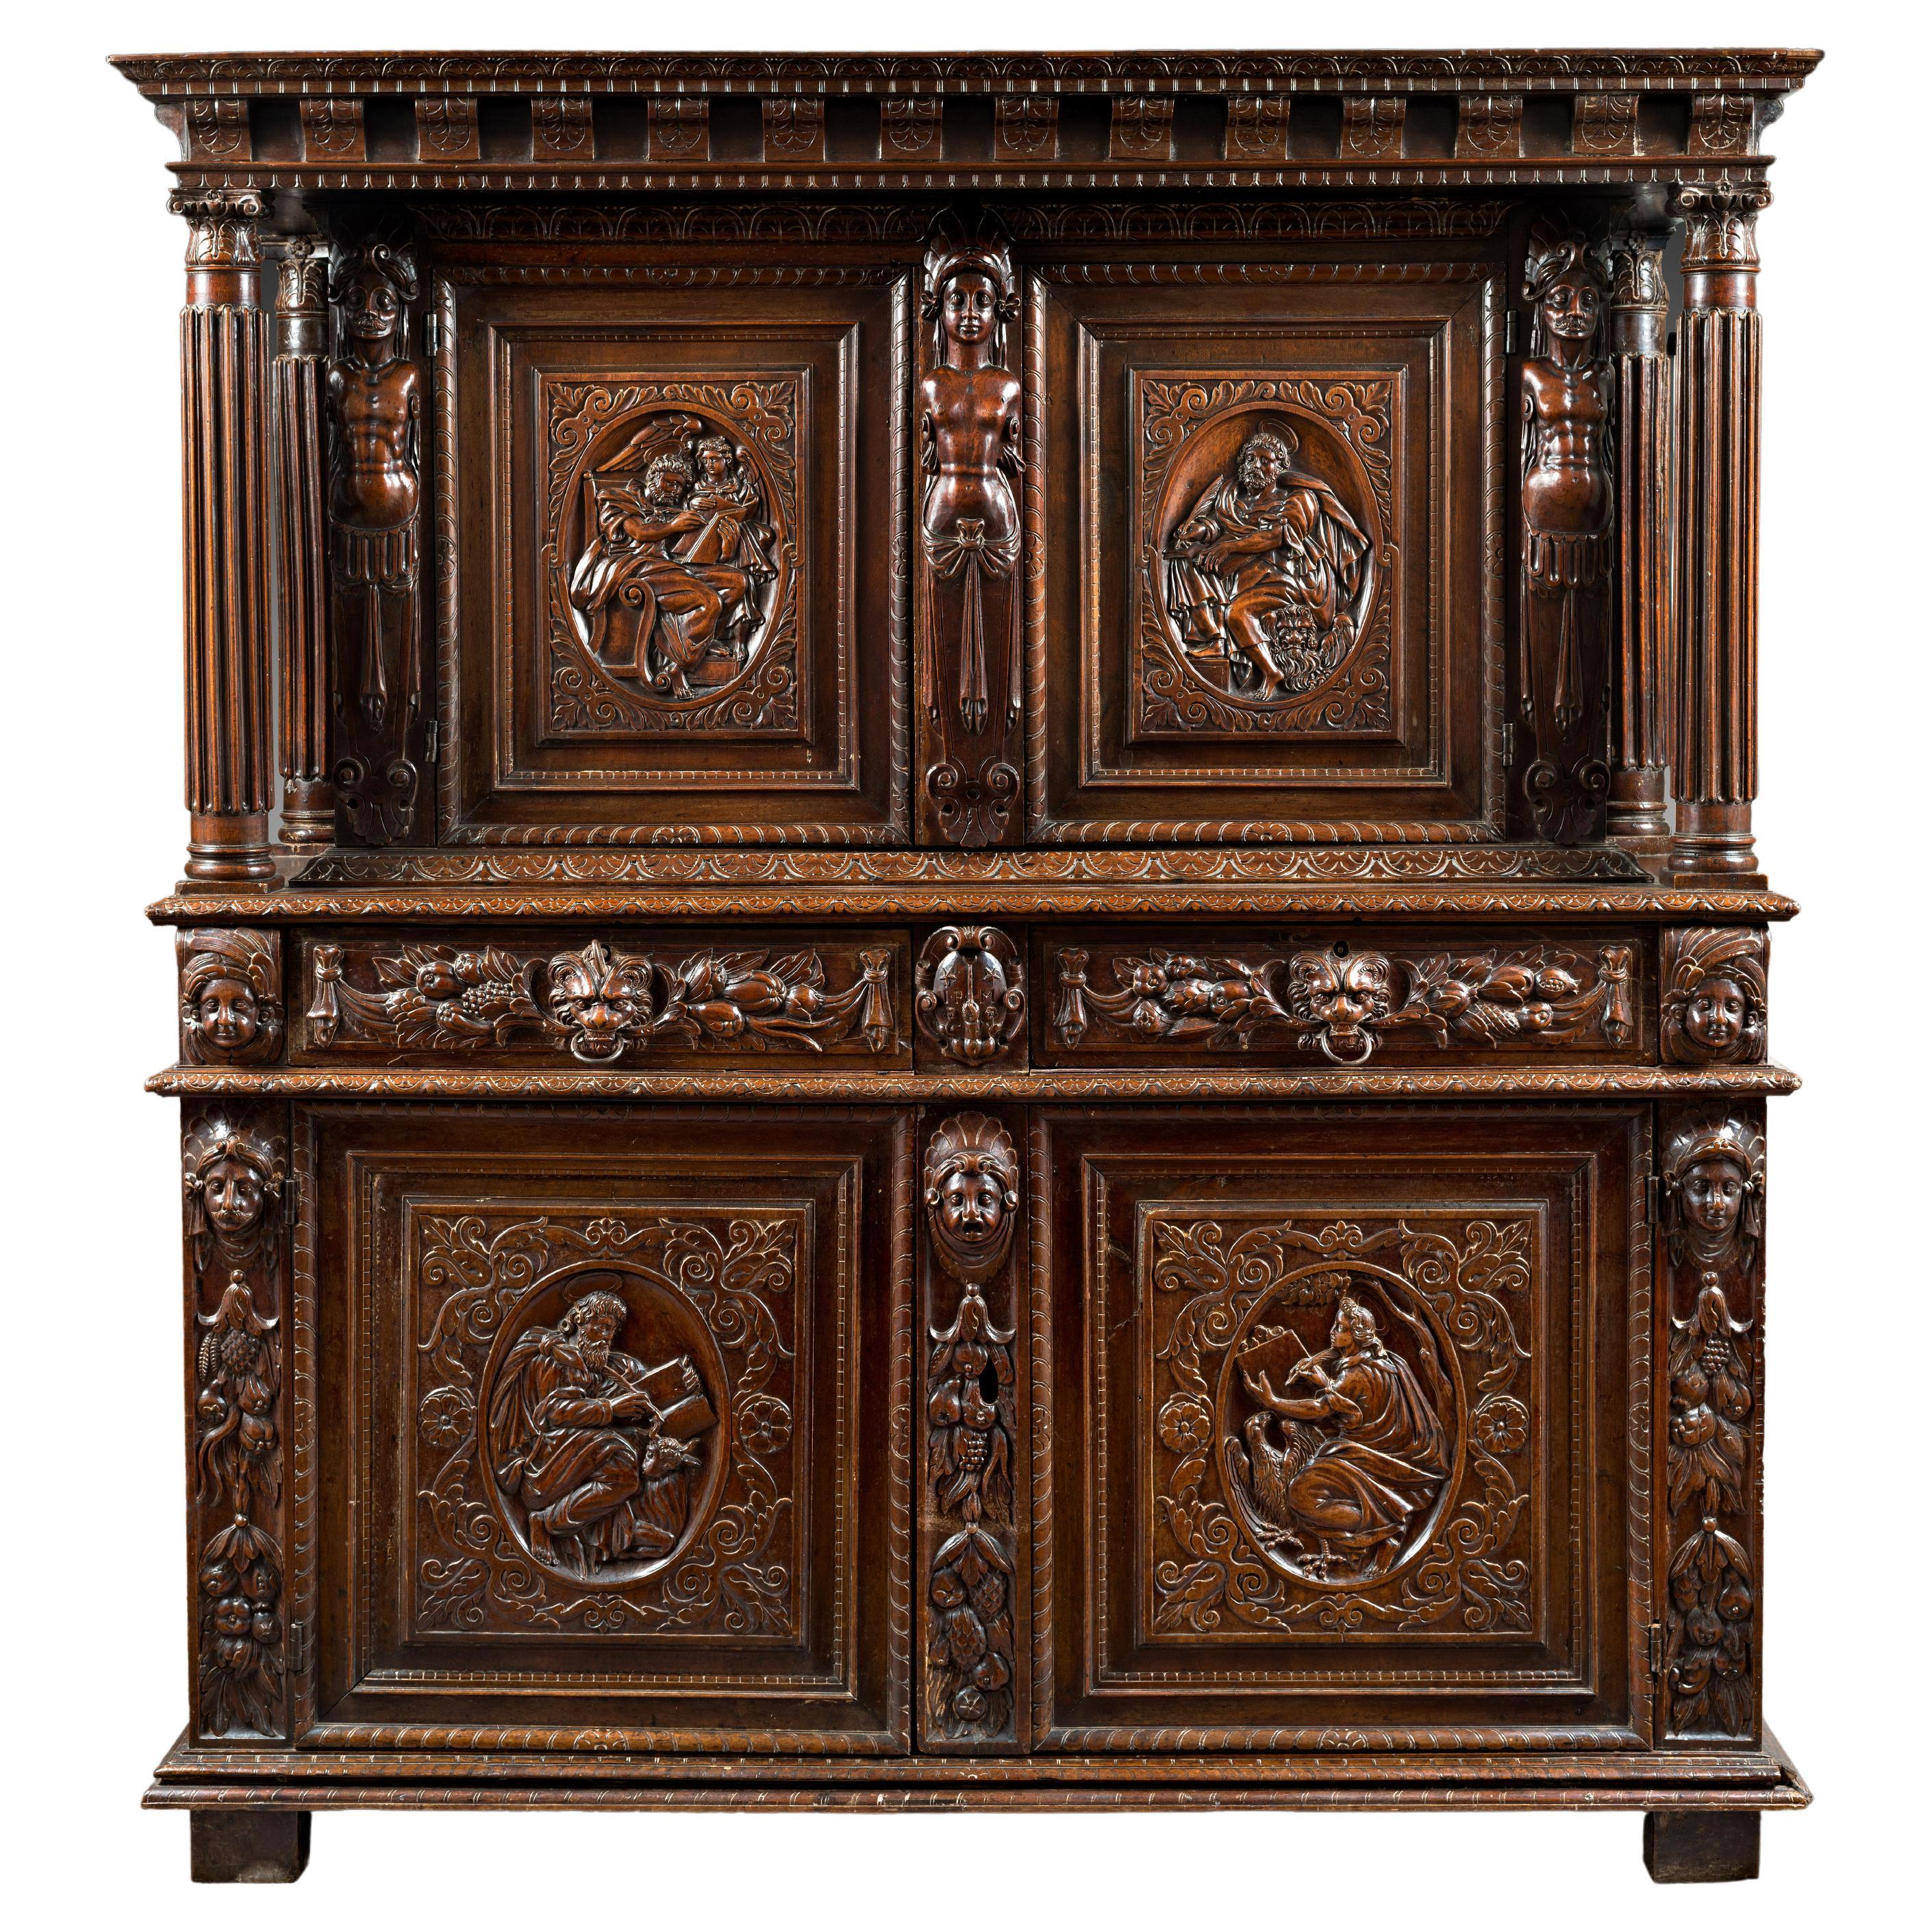 Cabinet de la Renaissance bourgogne représentant les quatre évangélistes